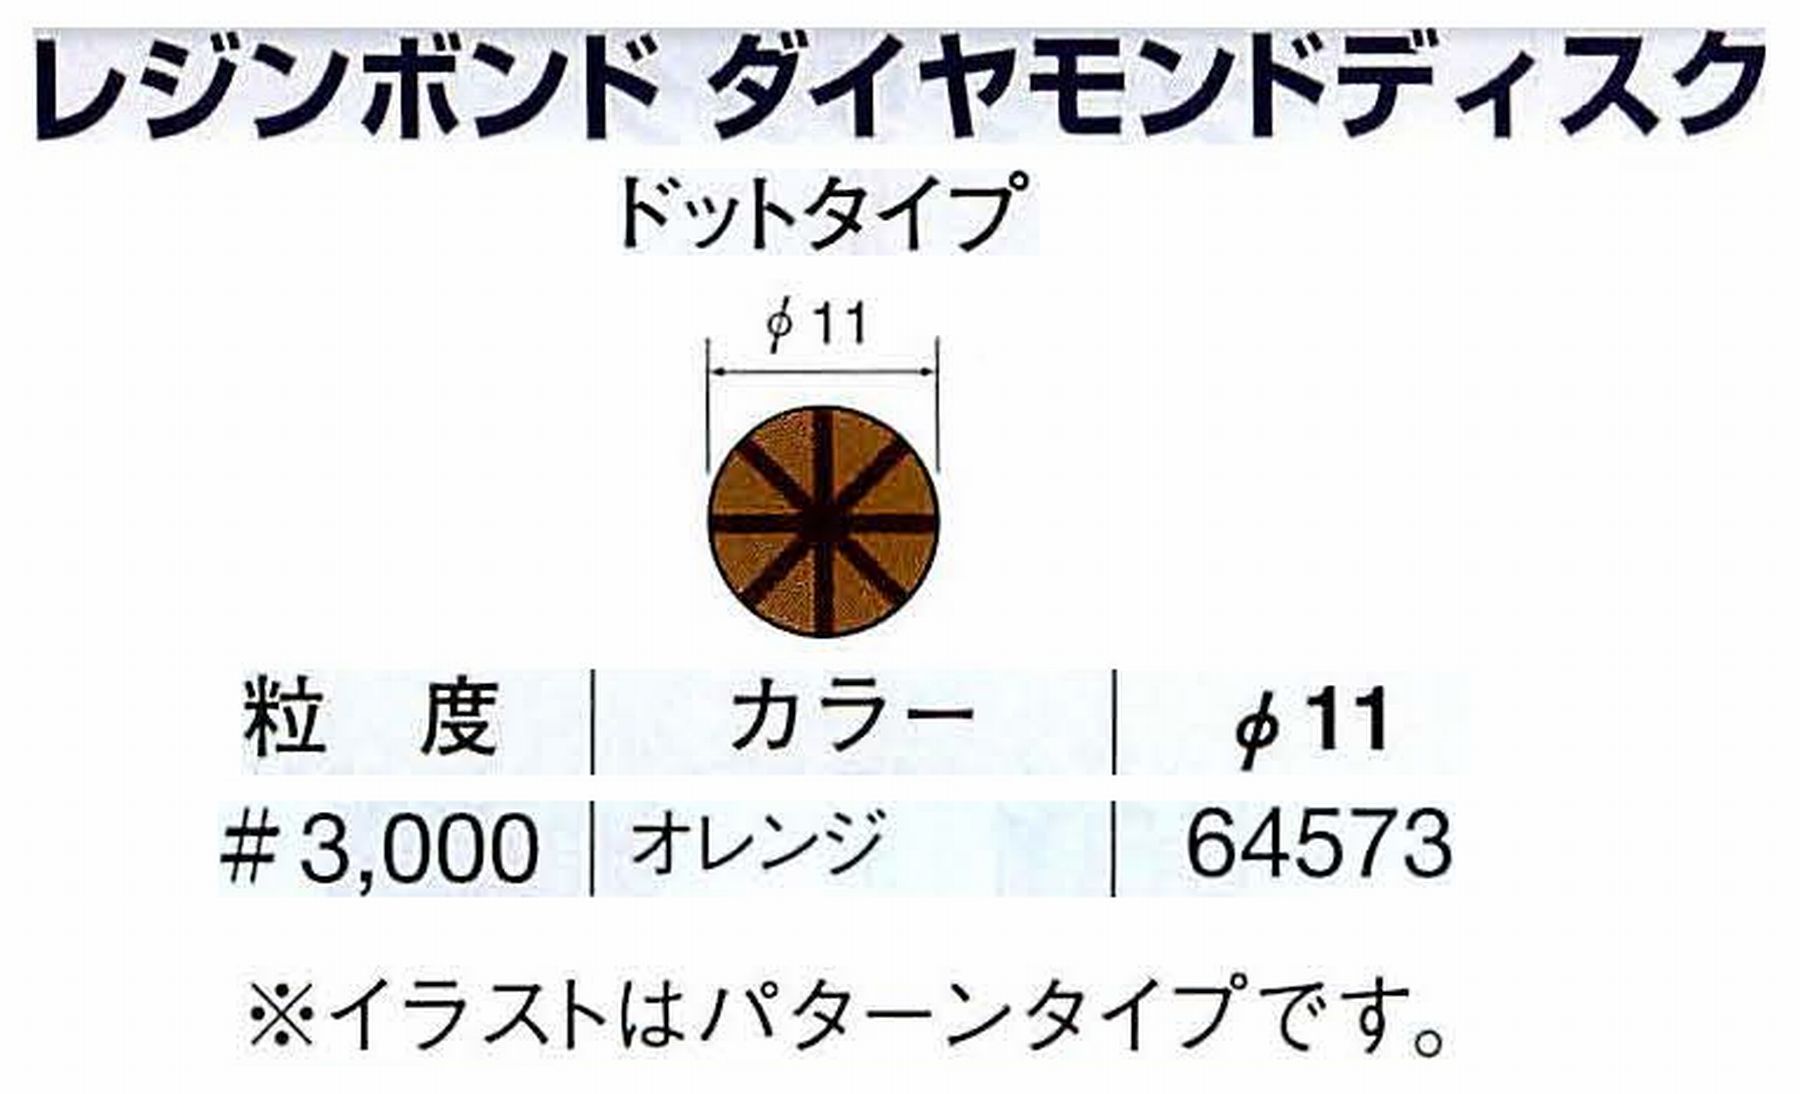 ナカニシ/NAKANISHI アングルグラインダ(電動・エアー) アングルアタッチメント専用工具 レジンボンド ダイヤモンドディスク(ドットタイプ) 64573